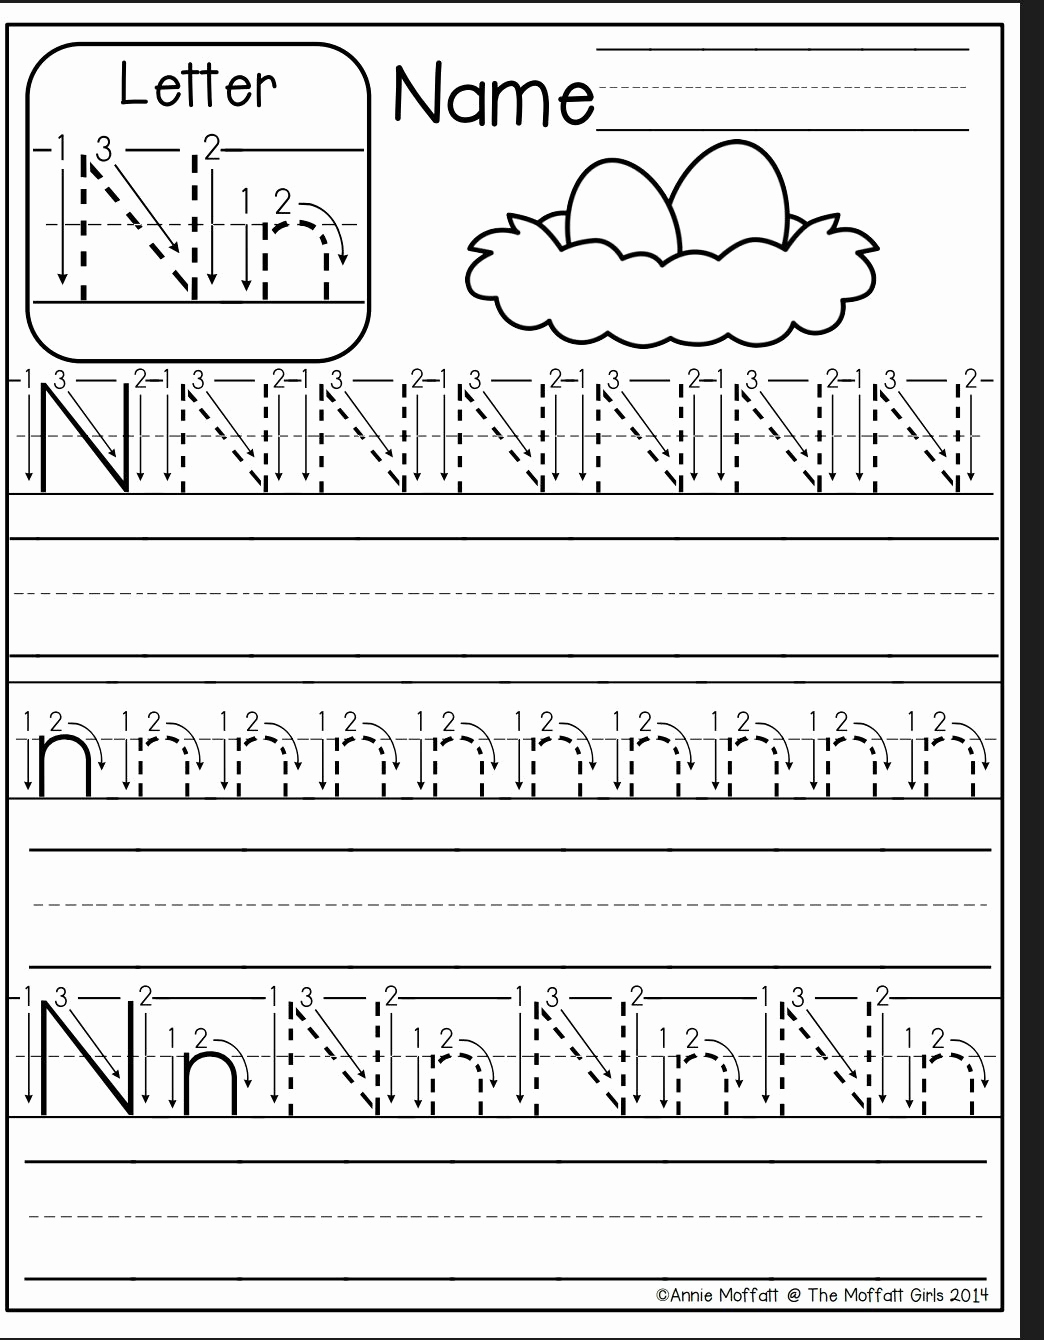 Letter N Worksheets for Kindergarten Elegant Tracing Letter N Worksheets for Preschool